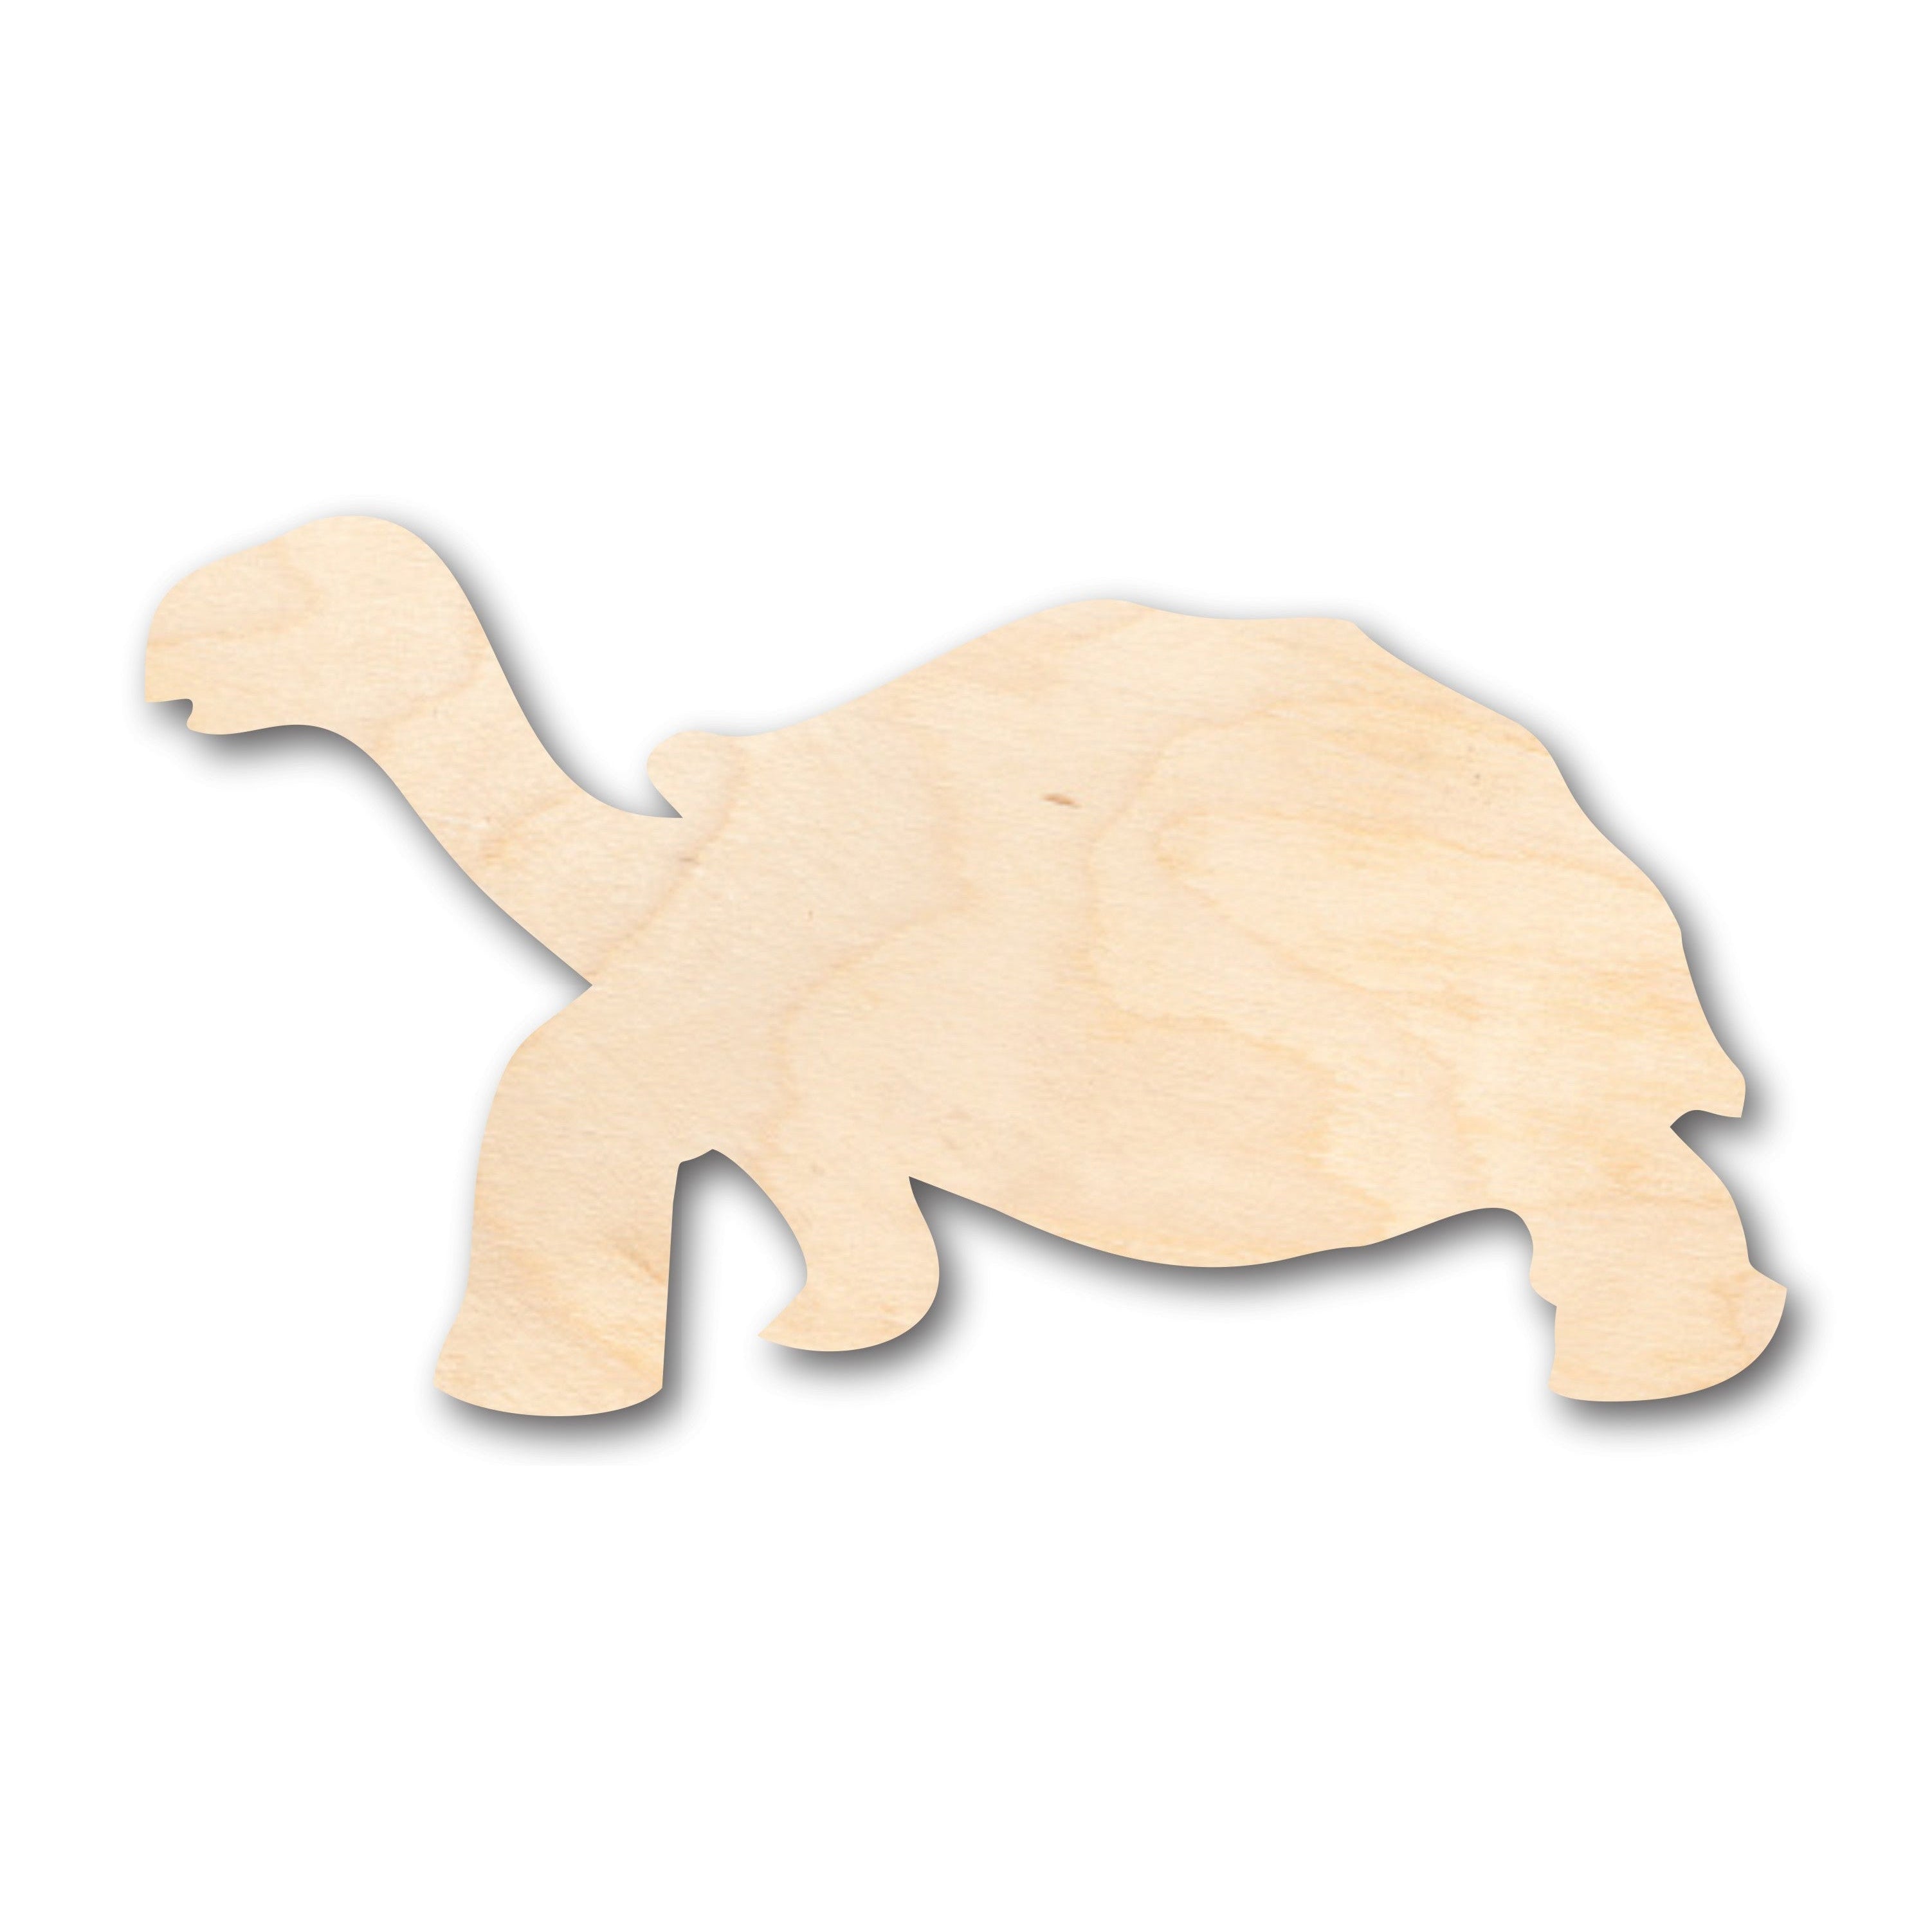 Unfinished Wood Tortoise Shape - Craft - up to 36